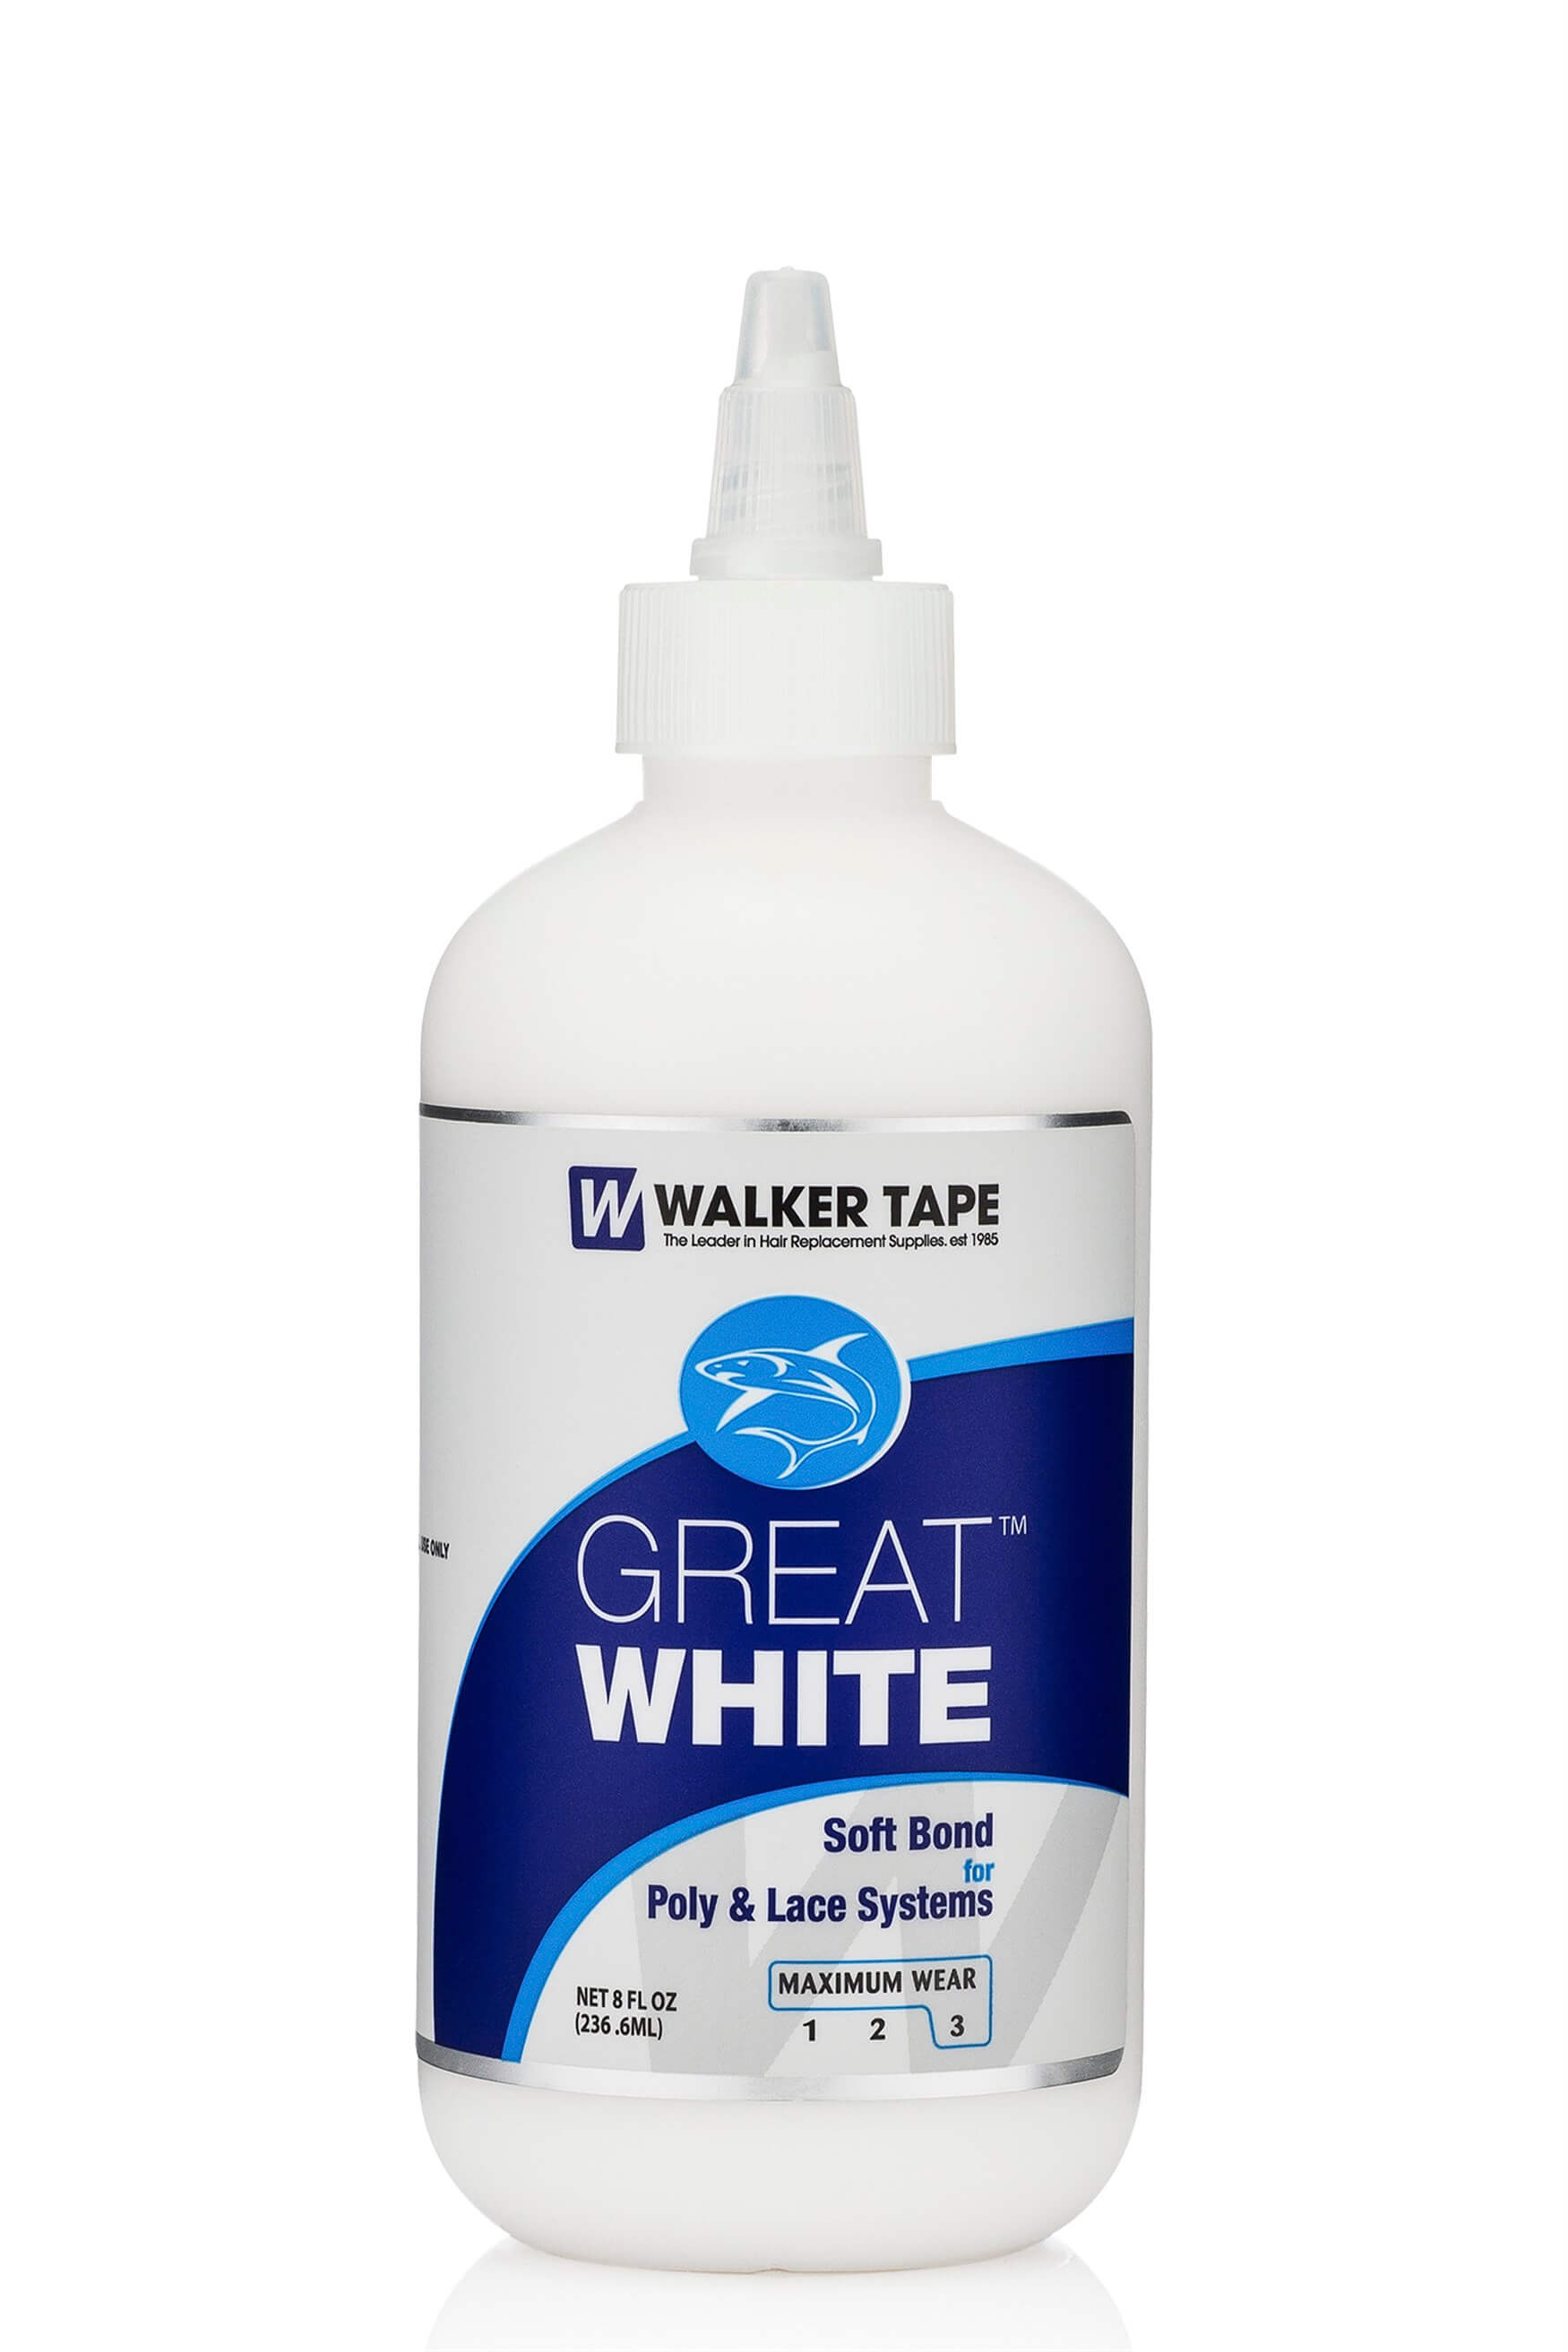 Walker Tape Great White Protez Saç Yapıştırıcısı 8 FL OZ (236.6ML)